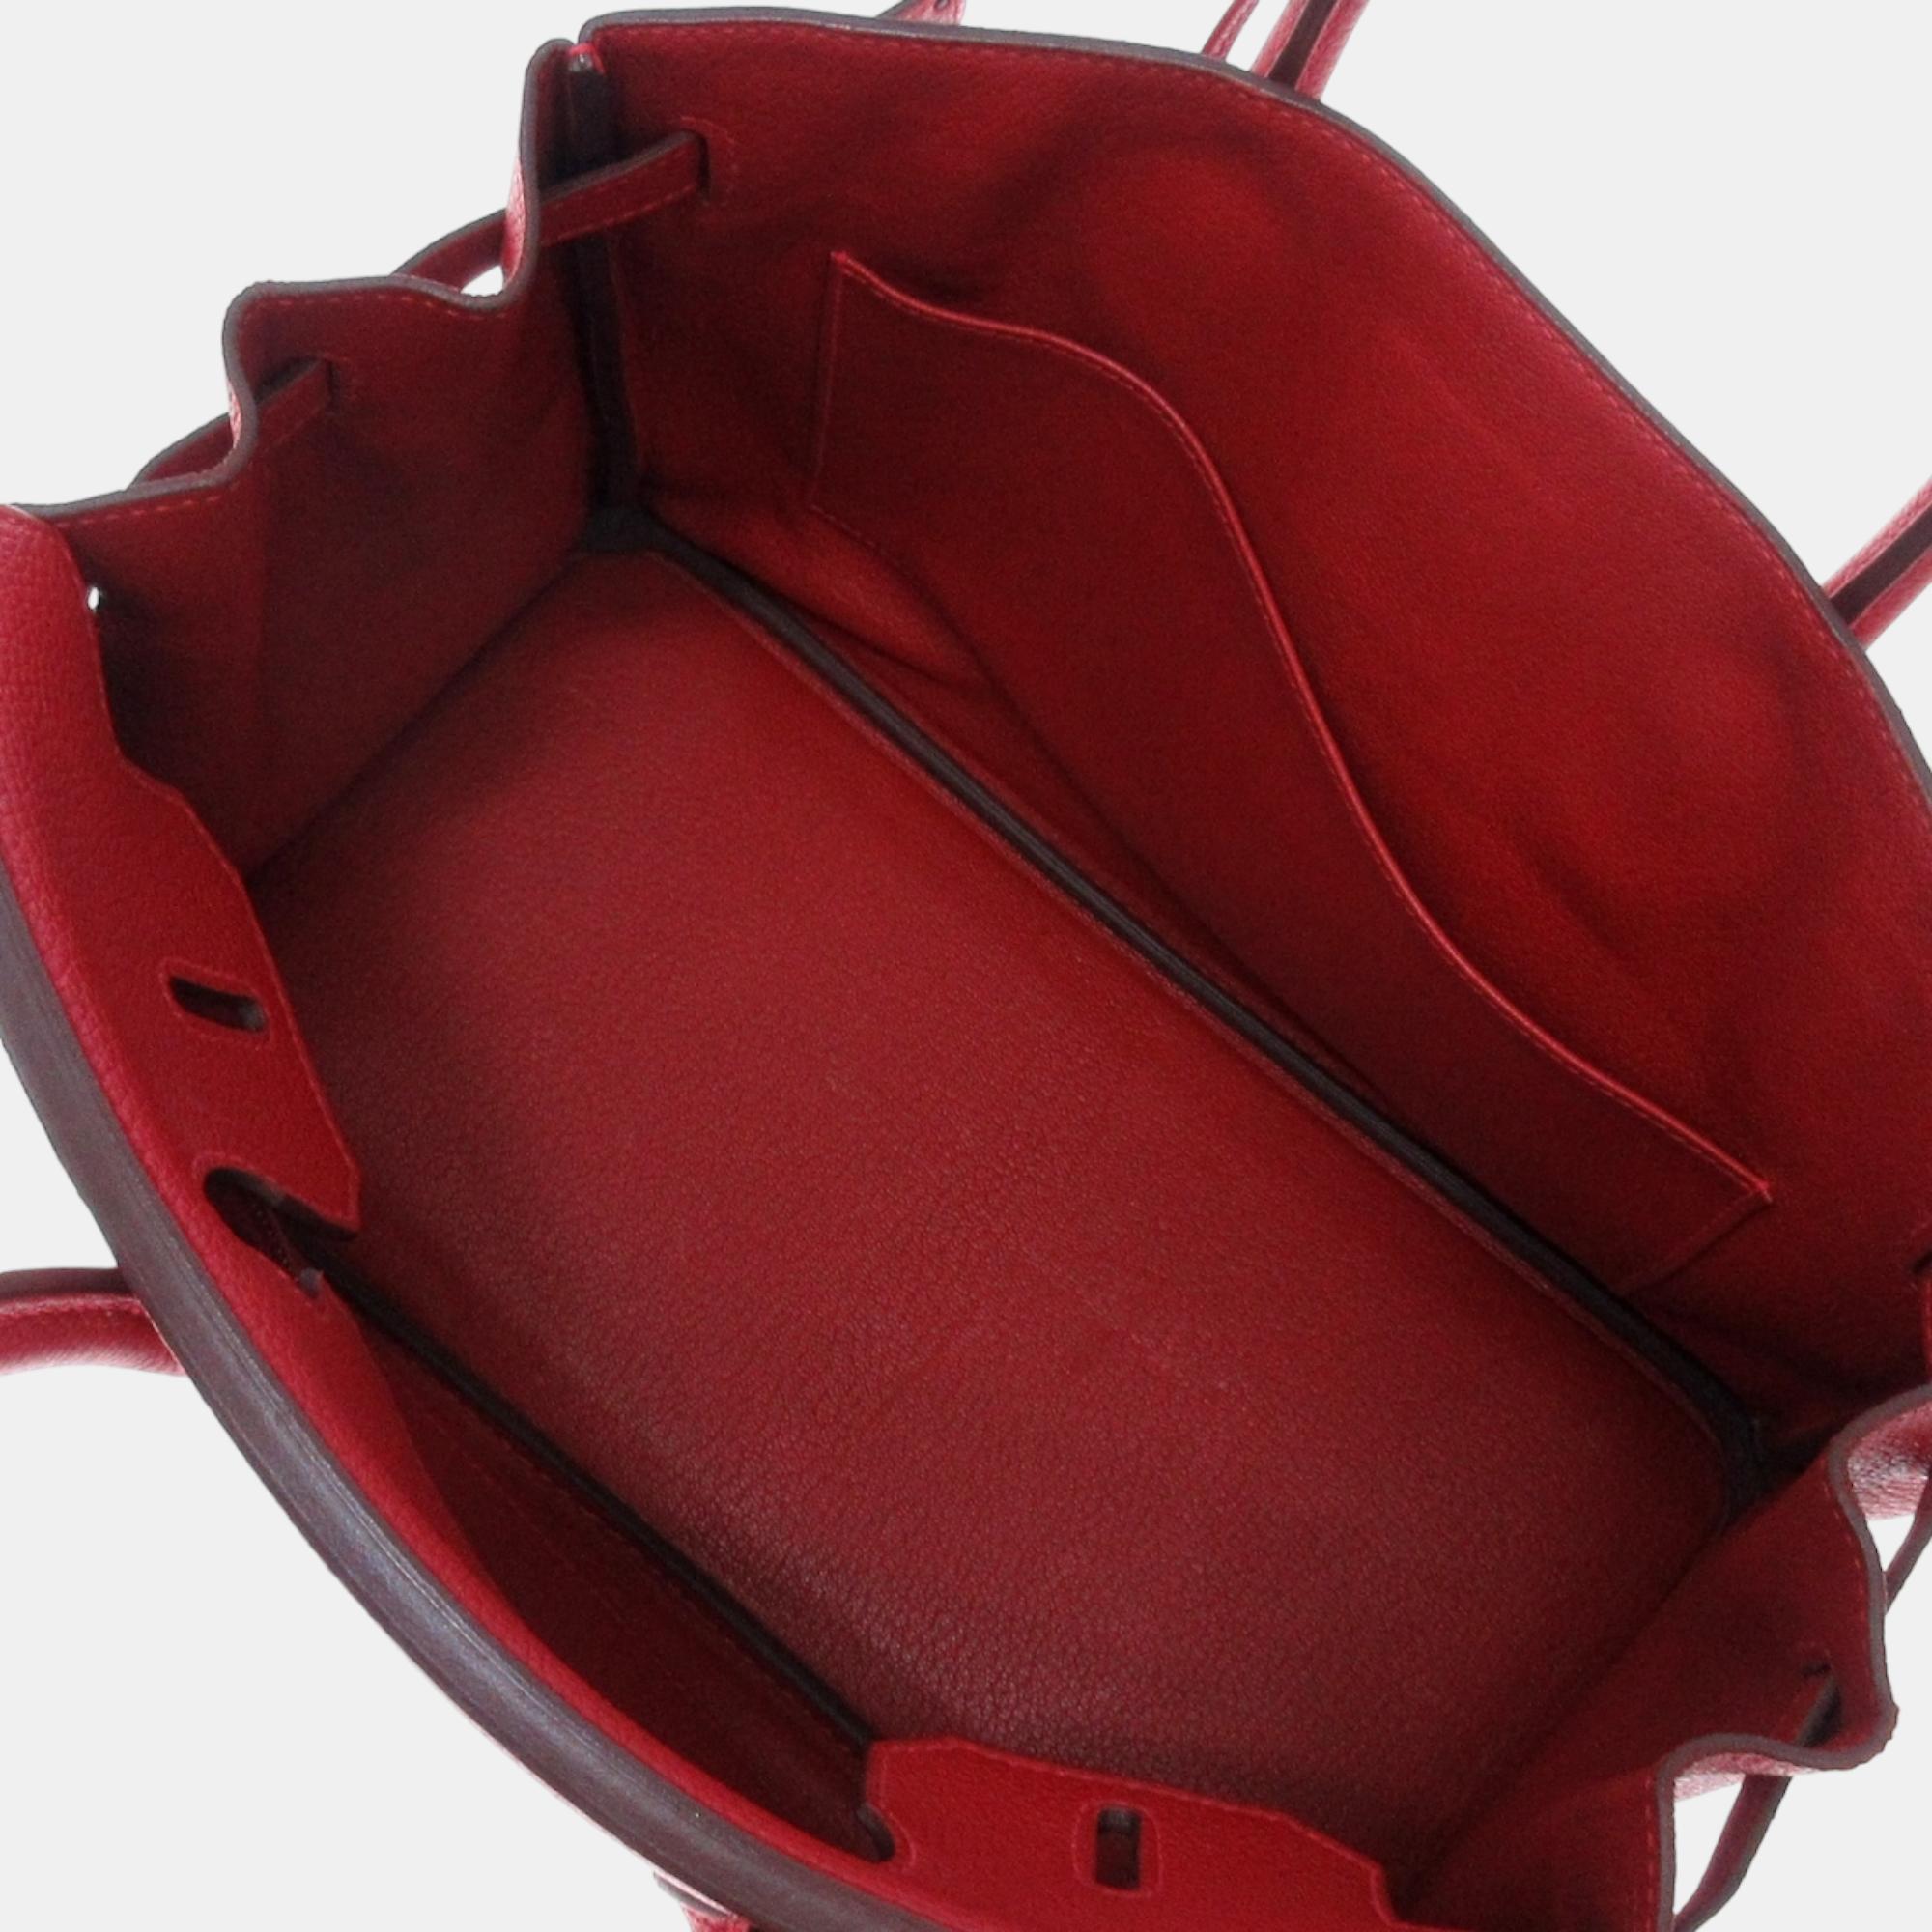 Hermes Red Togo Leather Birkin 30 Tote Bag